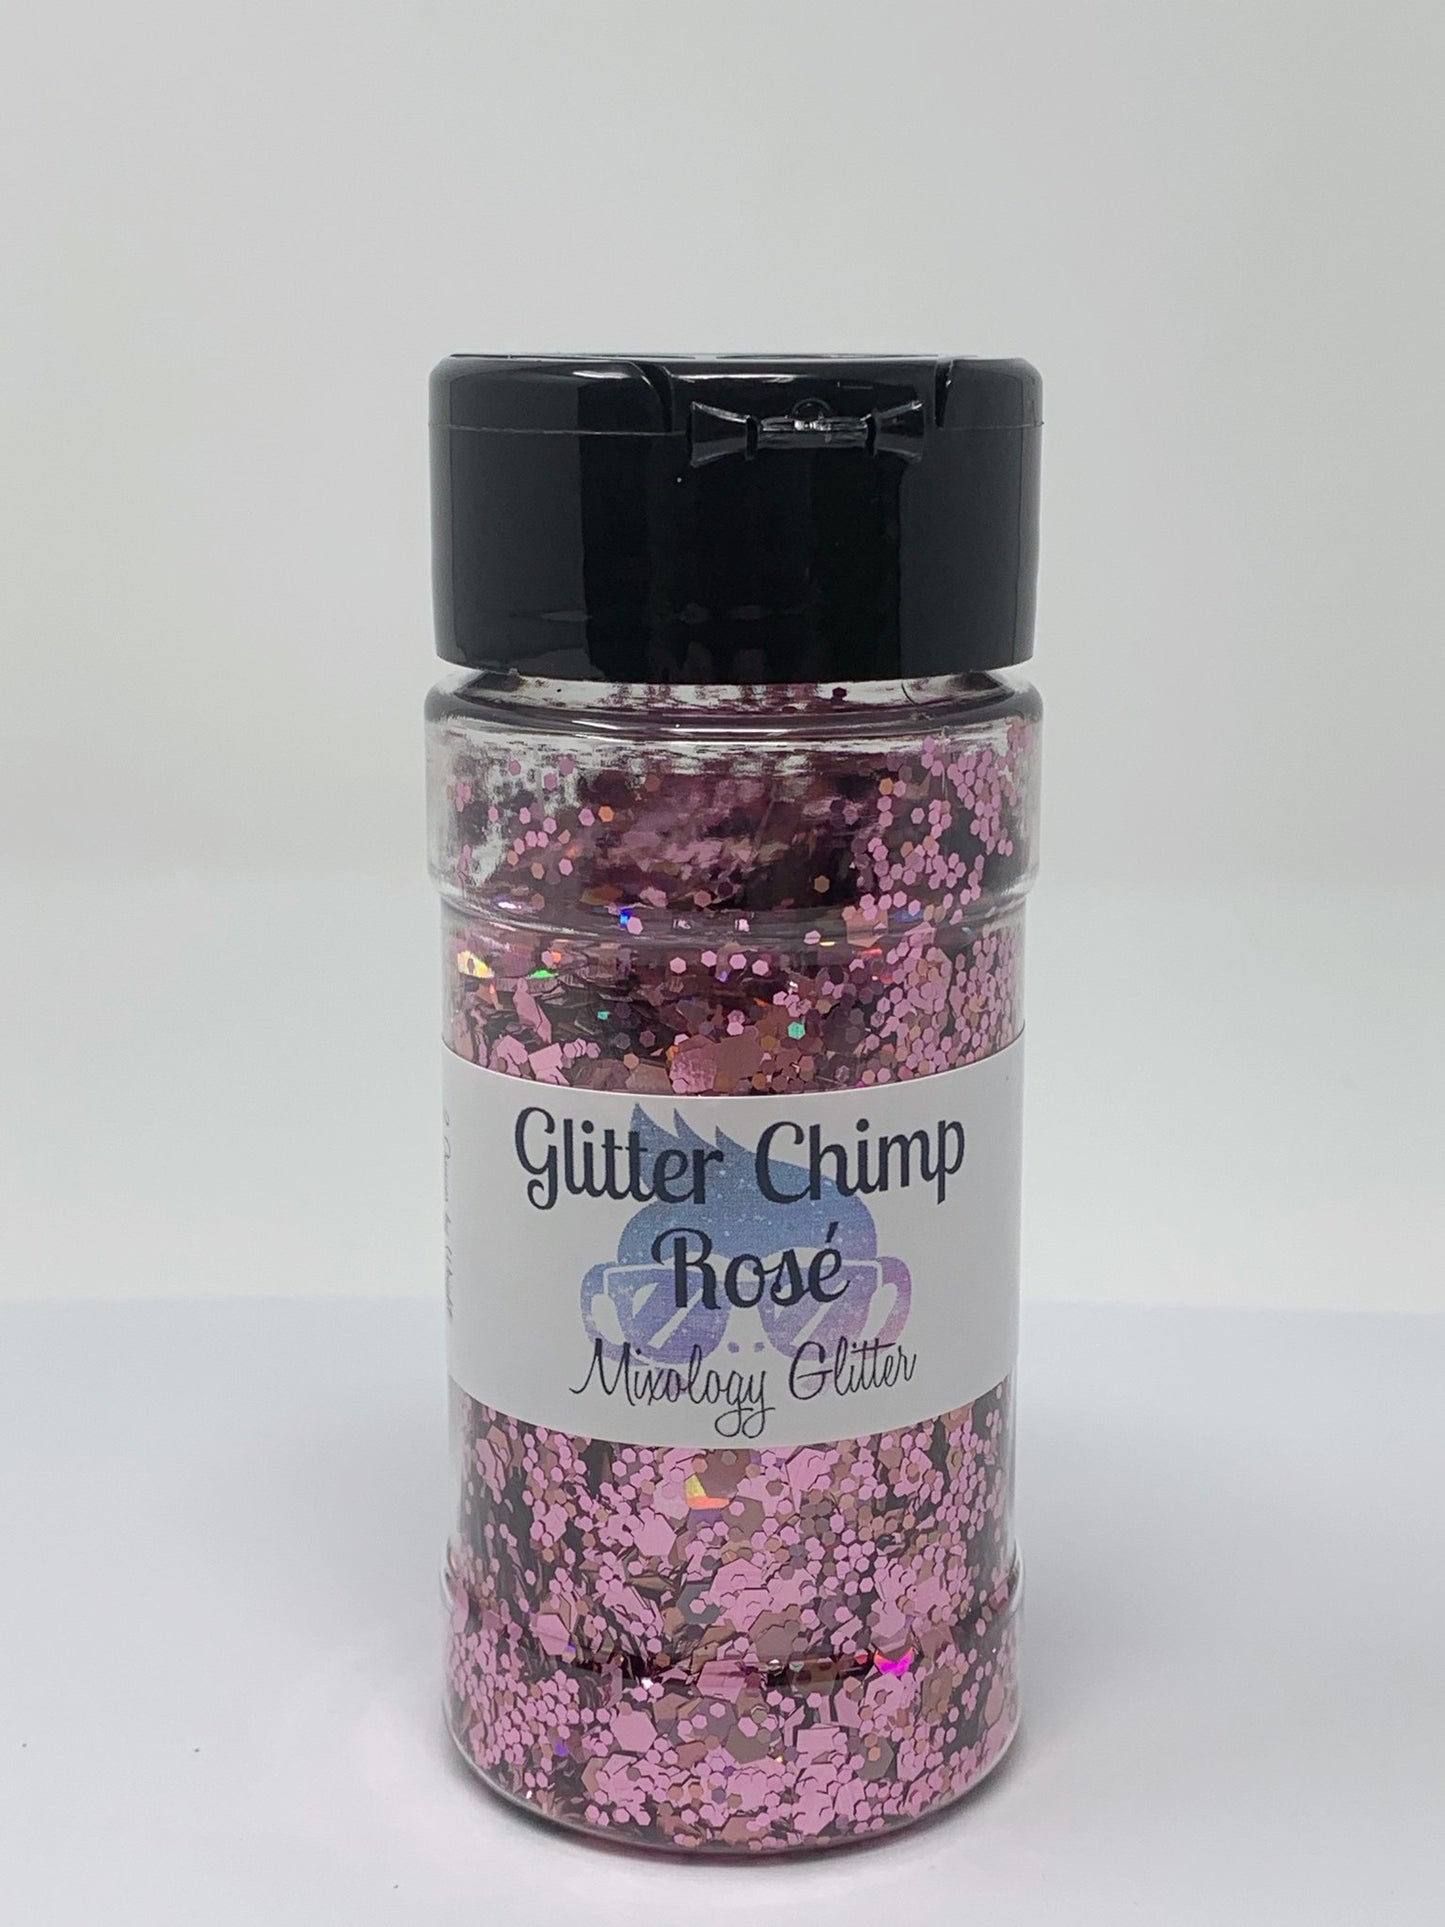 Rose Mixology Glitter